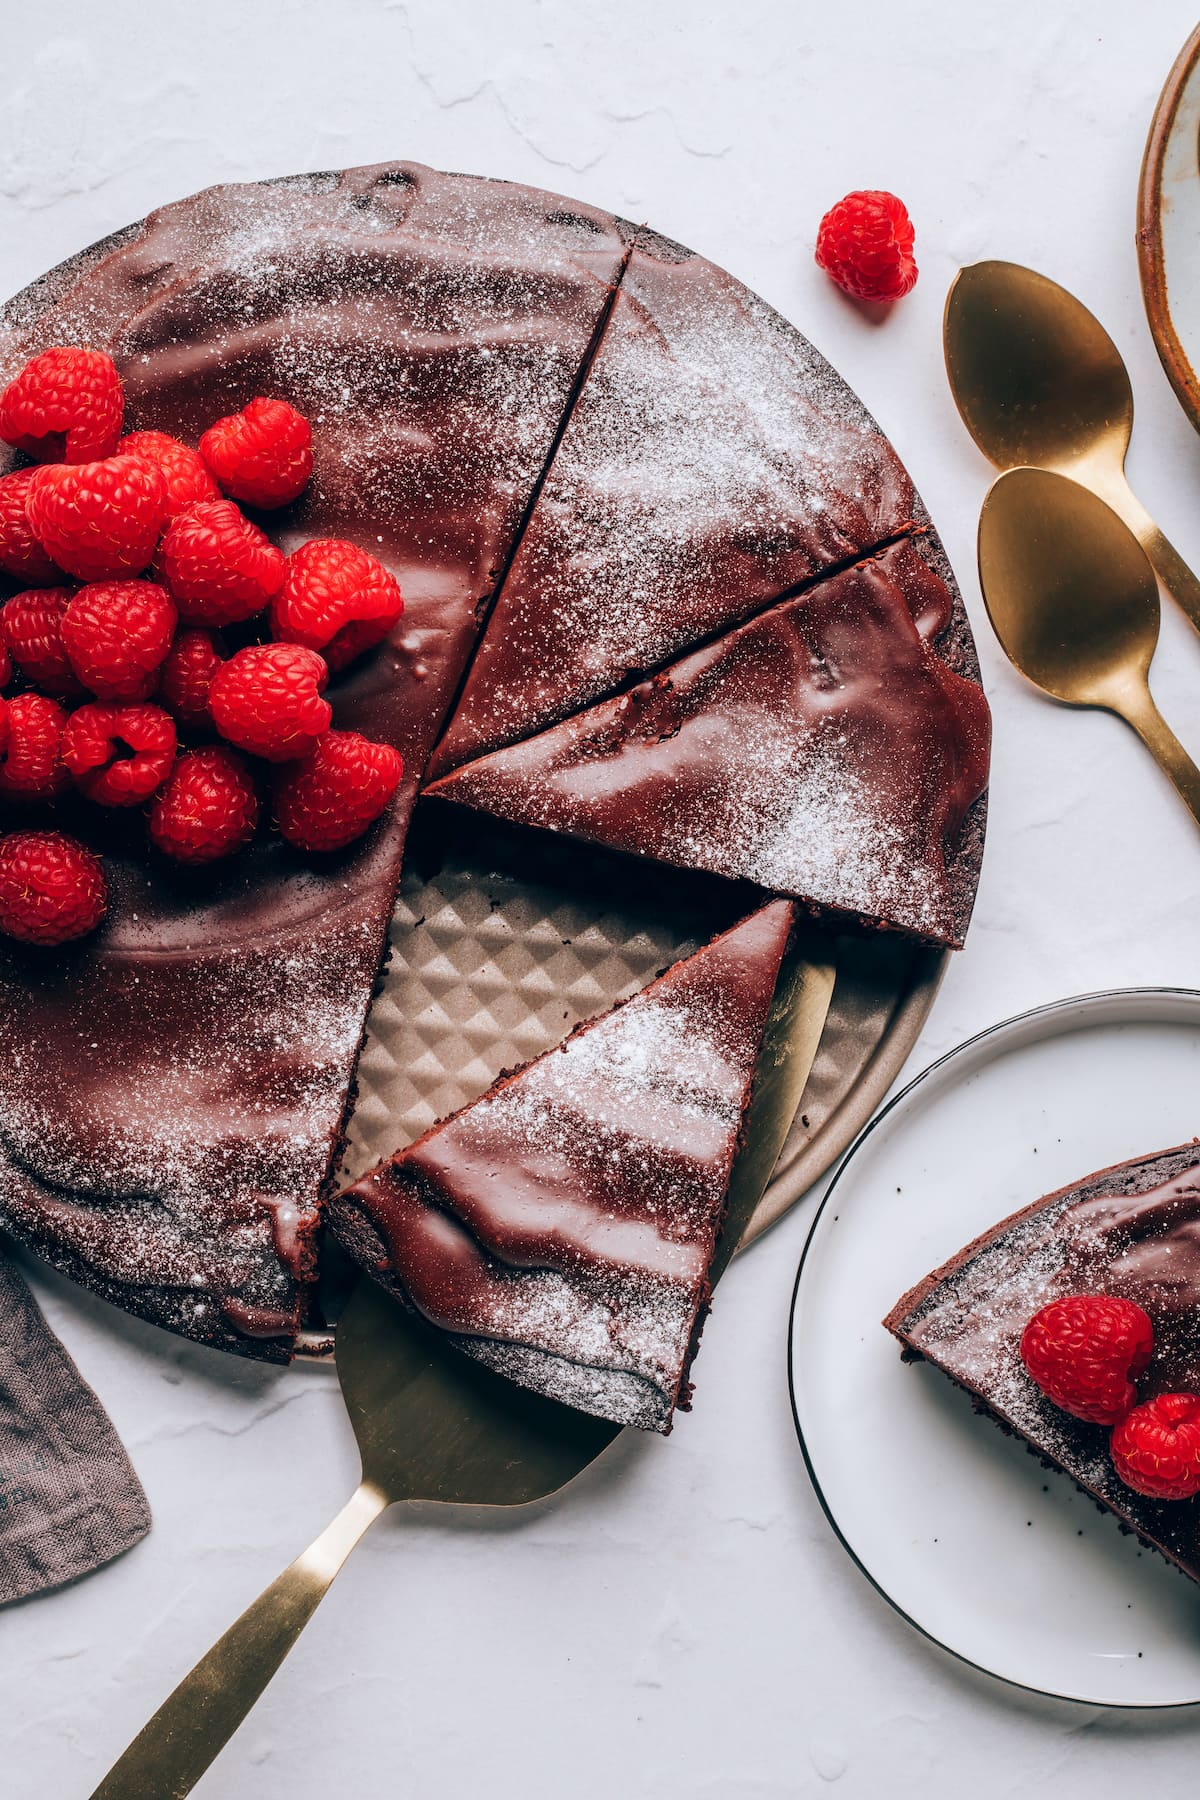 Uma vista aérea de um bolo de chocolate sem farinha, coberto com framboesas e açúcar em pó. Uma fatia de bolo está descansando sobre um utensílio para servir.